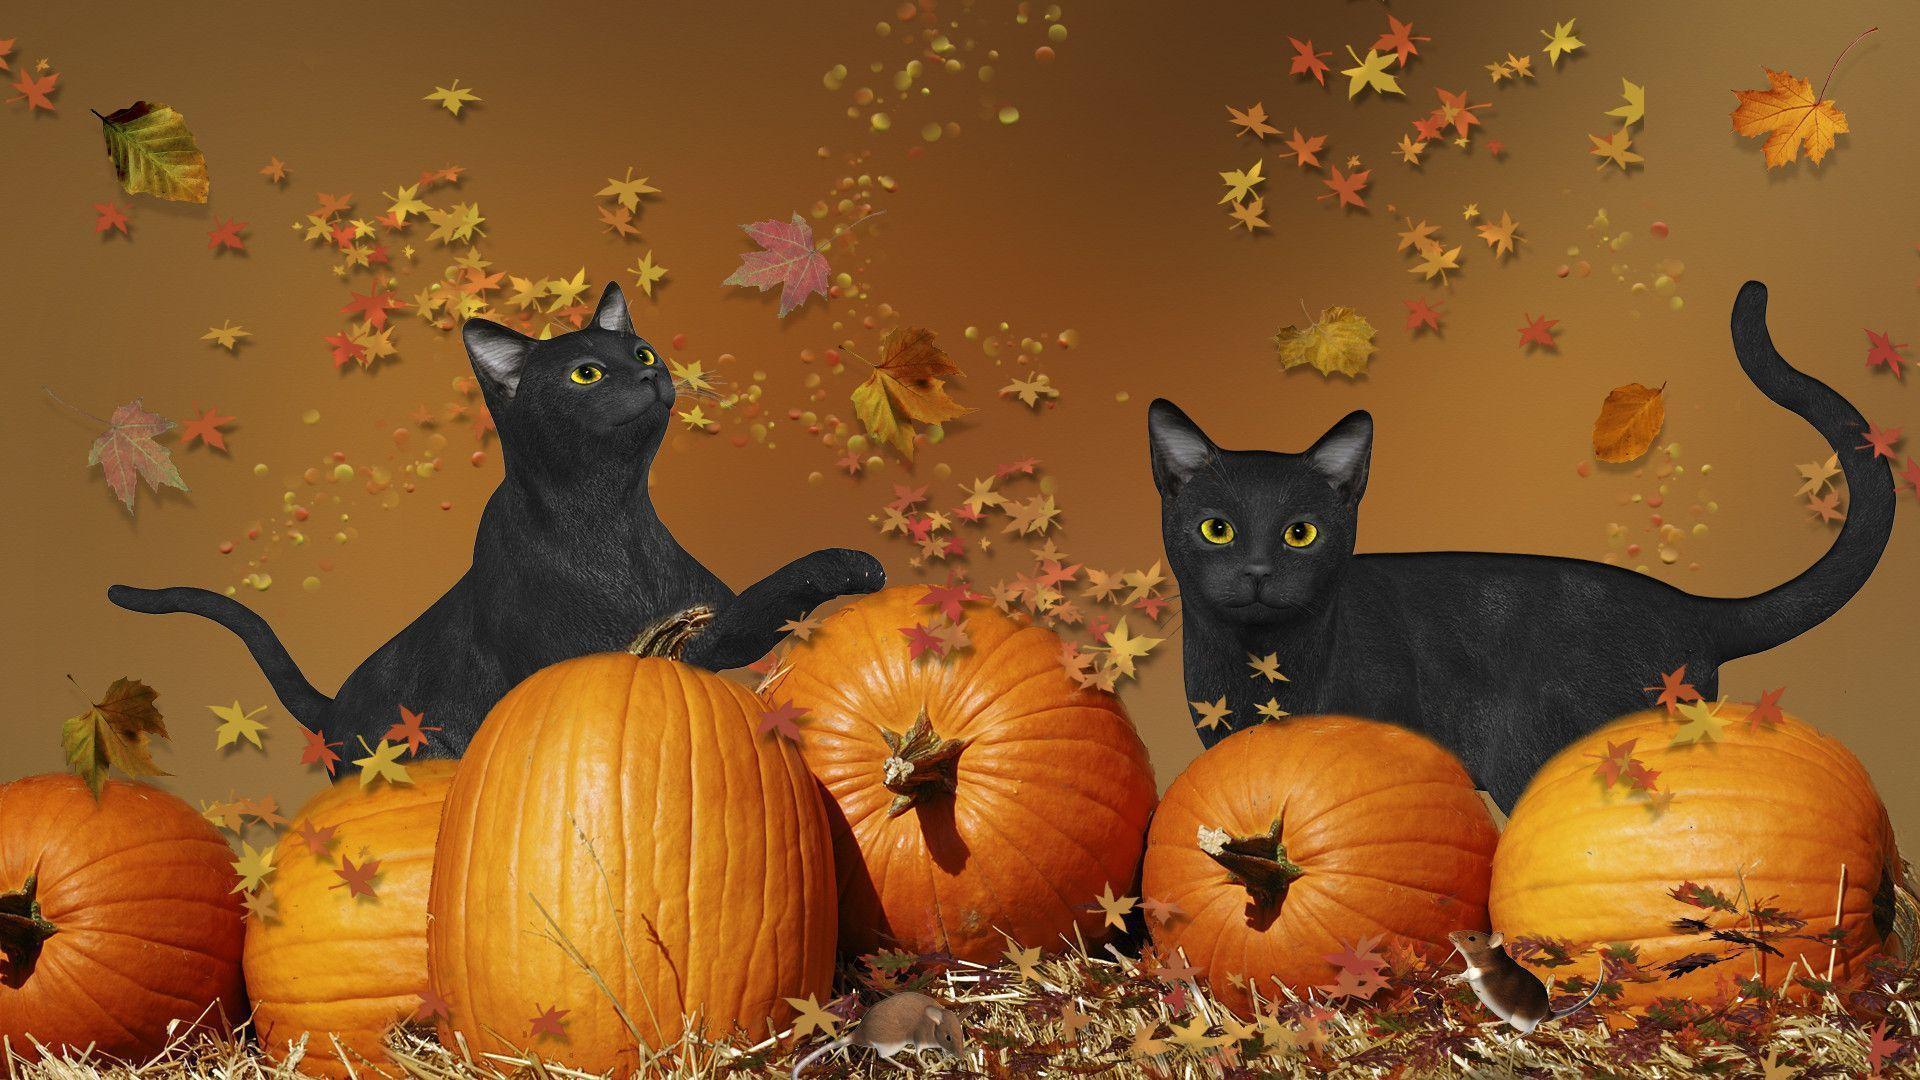 Wallpaper For > Cute Cat Halloween Wallpaper